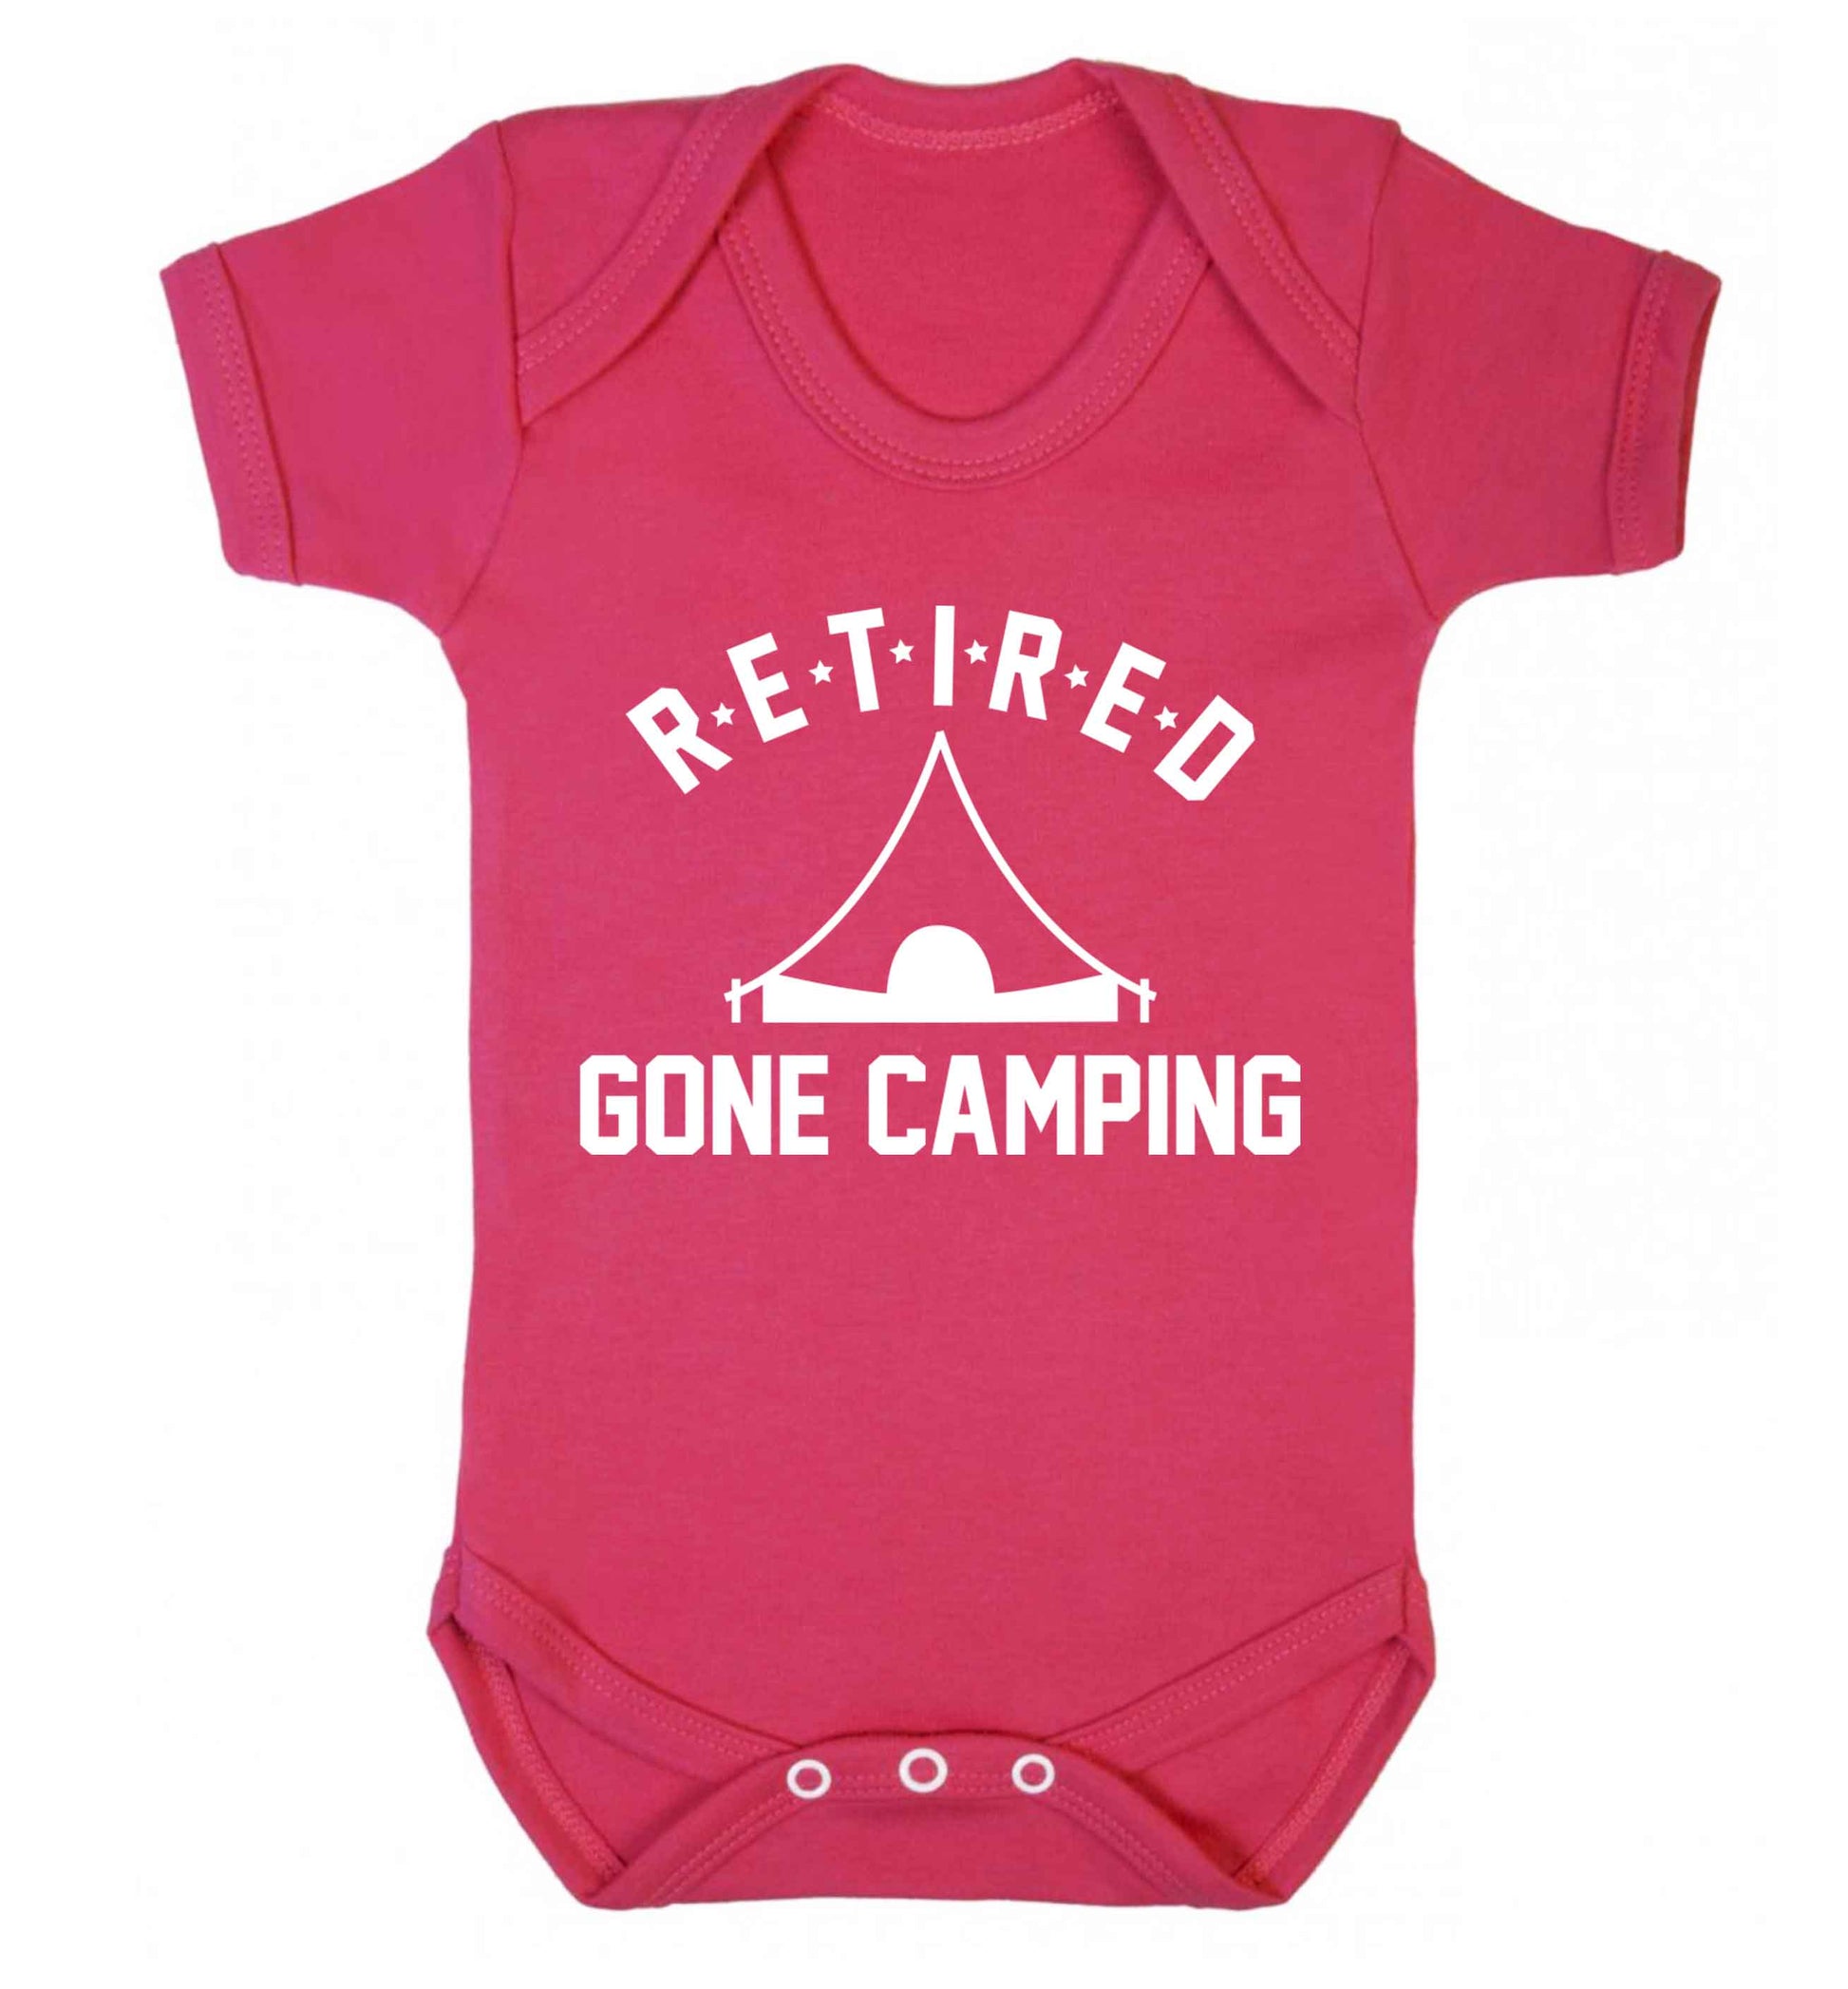 Retired gone camping Baby Vest dark pink 18-24 months